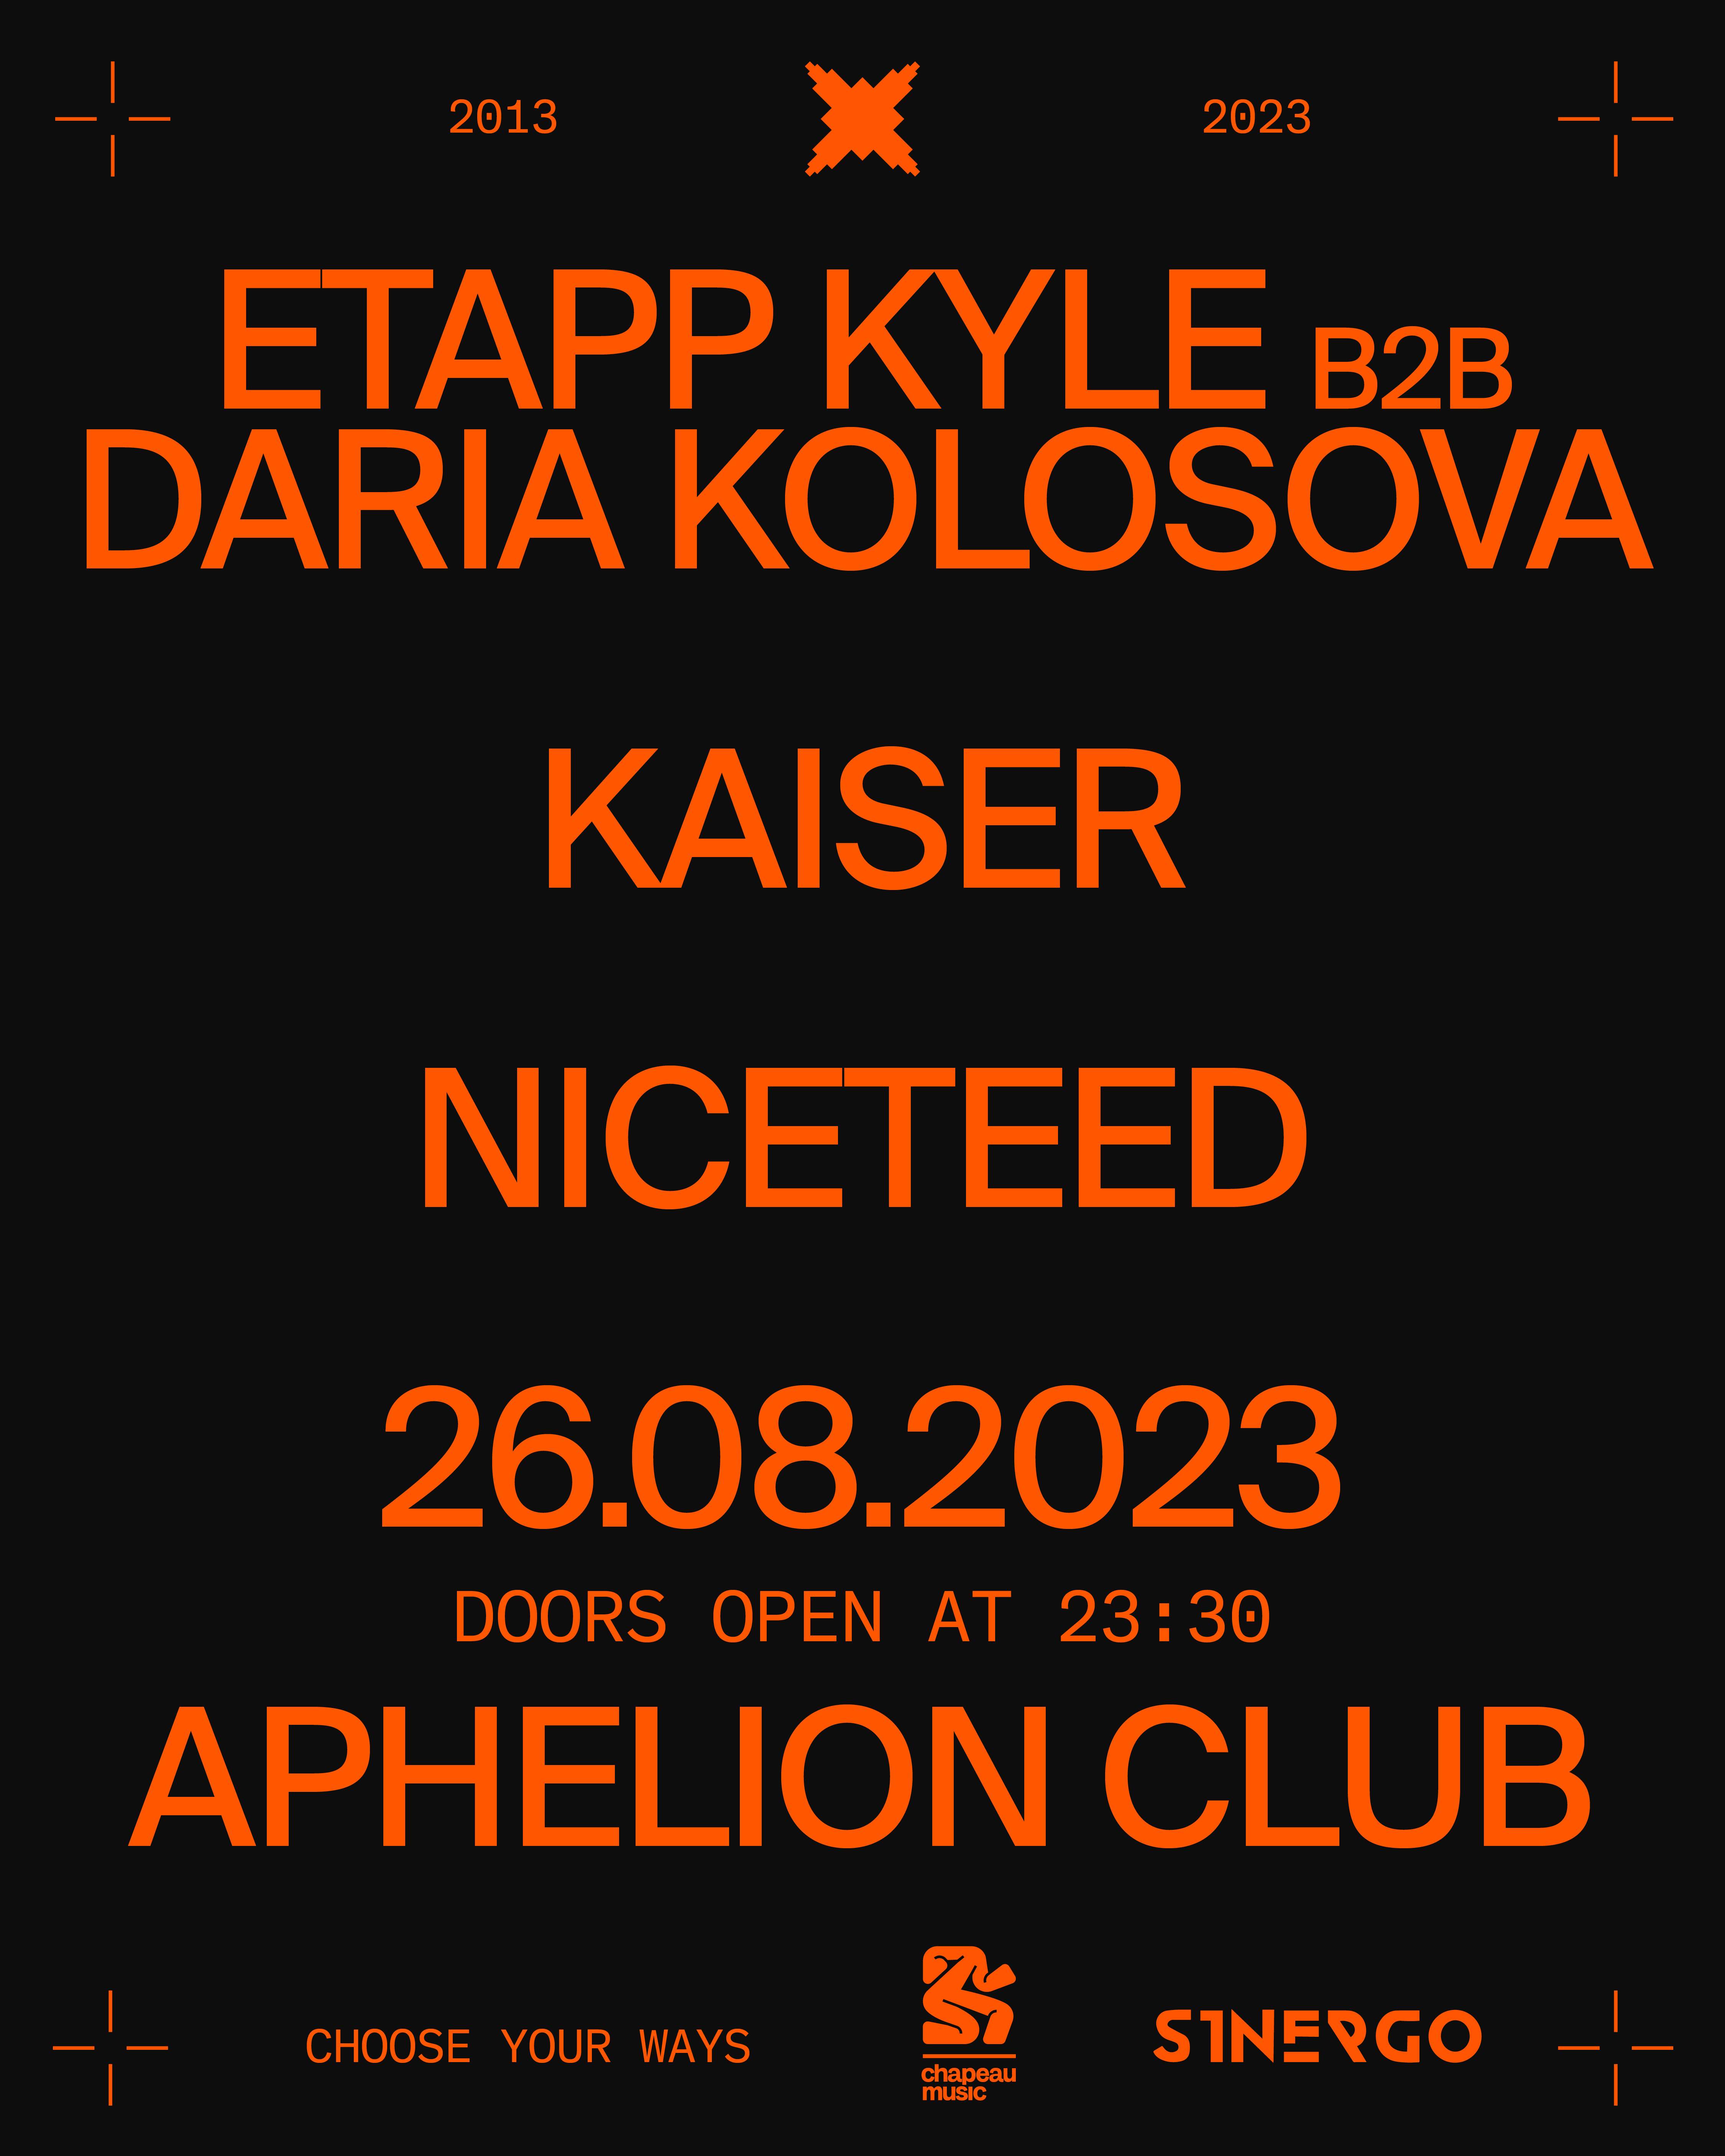 10 Years of WAYS with Etapp Kyle B2B Daria Kolosova, Niceteed and Kaiser - Página frontal